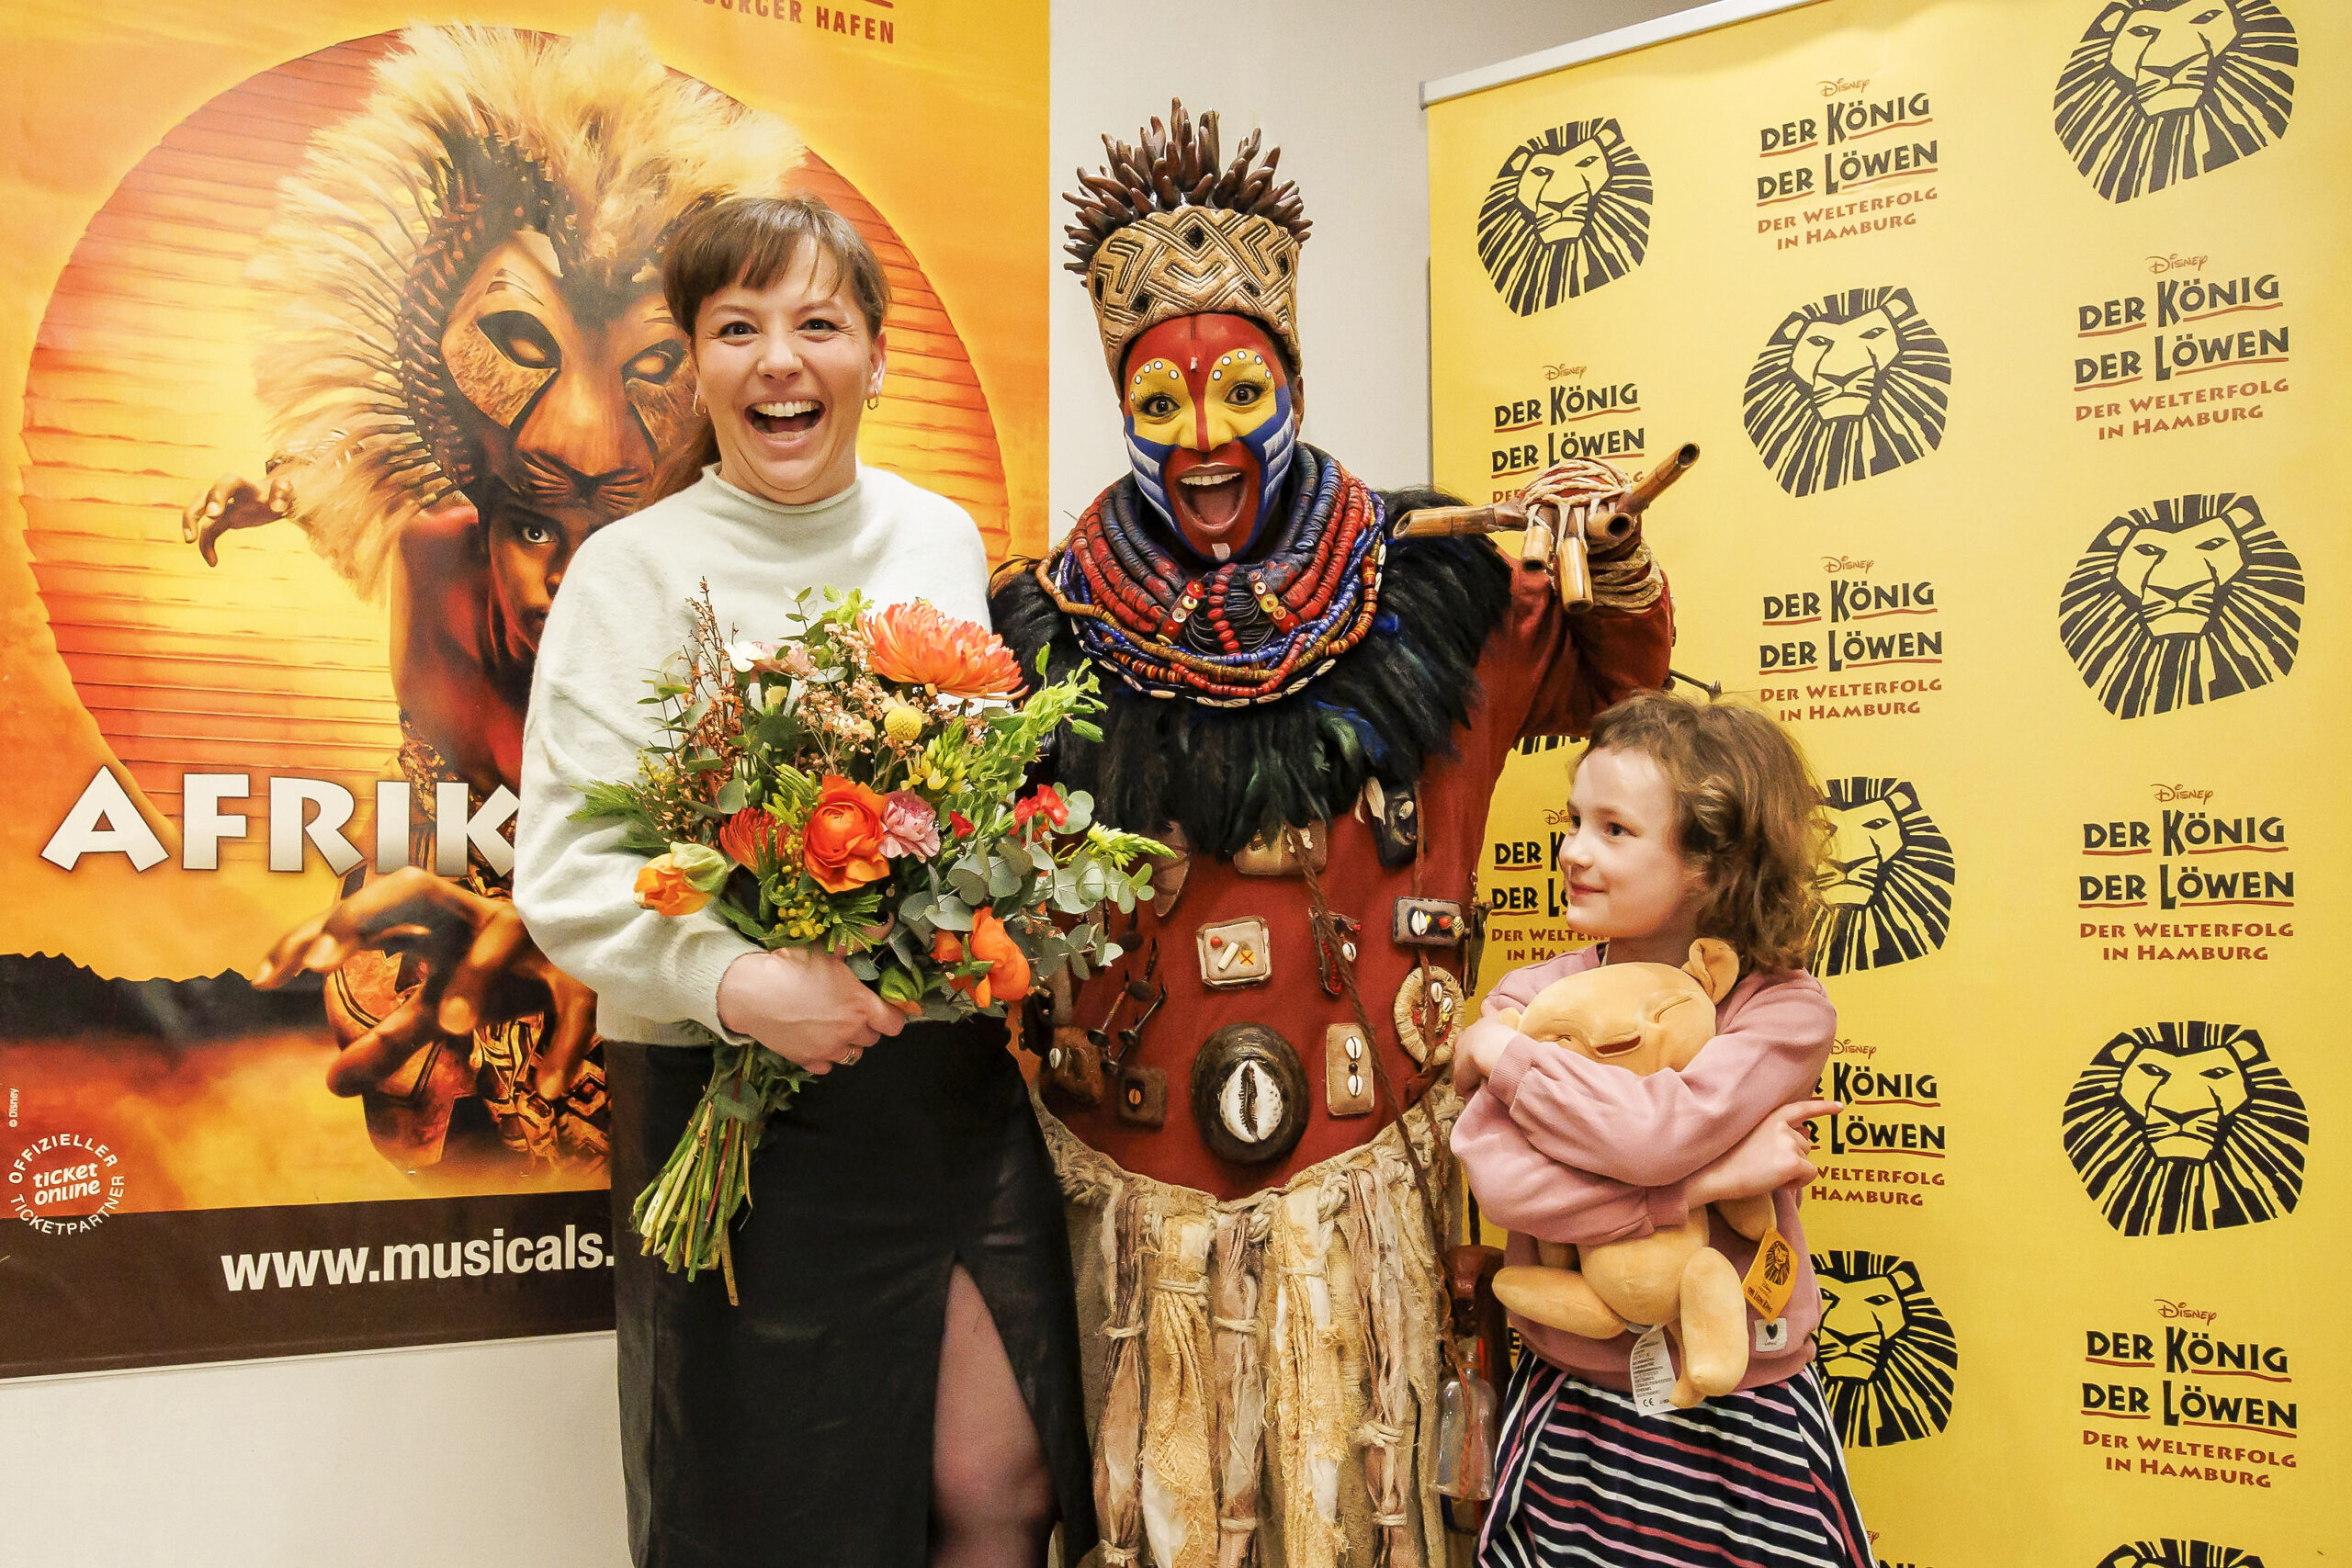 Links Michaela Baetgen lachend mit Blumenstrauß, in der Mitte die Rafki-Darstellerin in Kostüm und Maske, rechts die Tochter mit einem Löwen-Stofftier